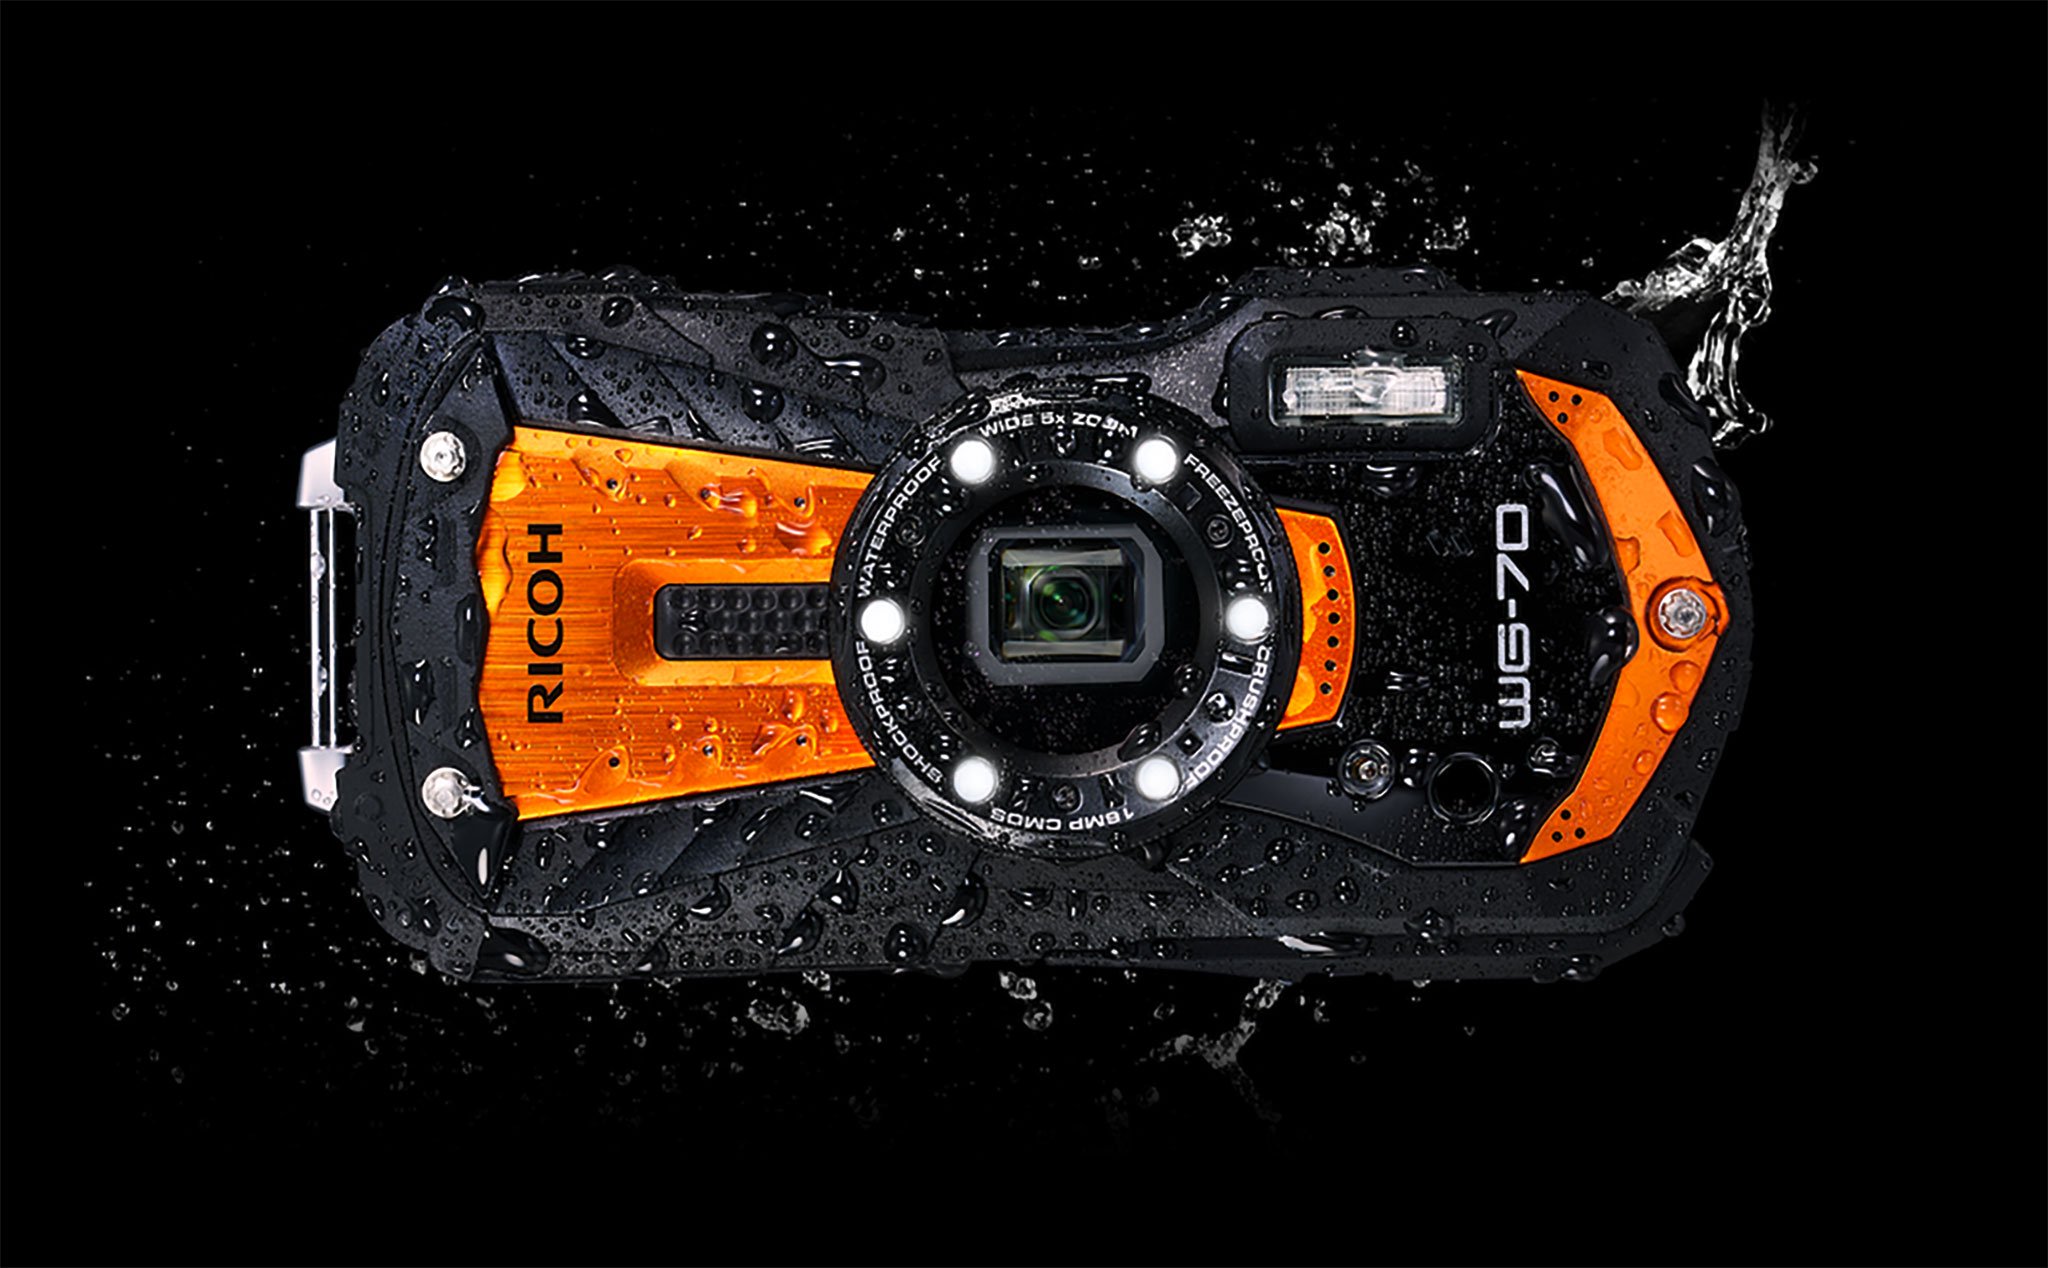 Ricoh giới thiệu máy ảnh compact chống nước WG-70: khả năng chụp macro với khoảng cách 1cm